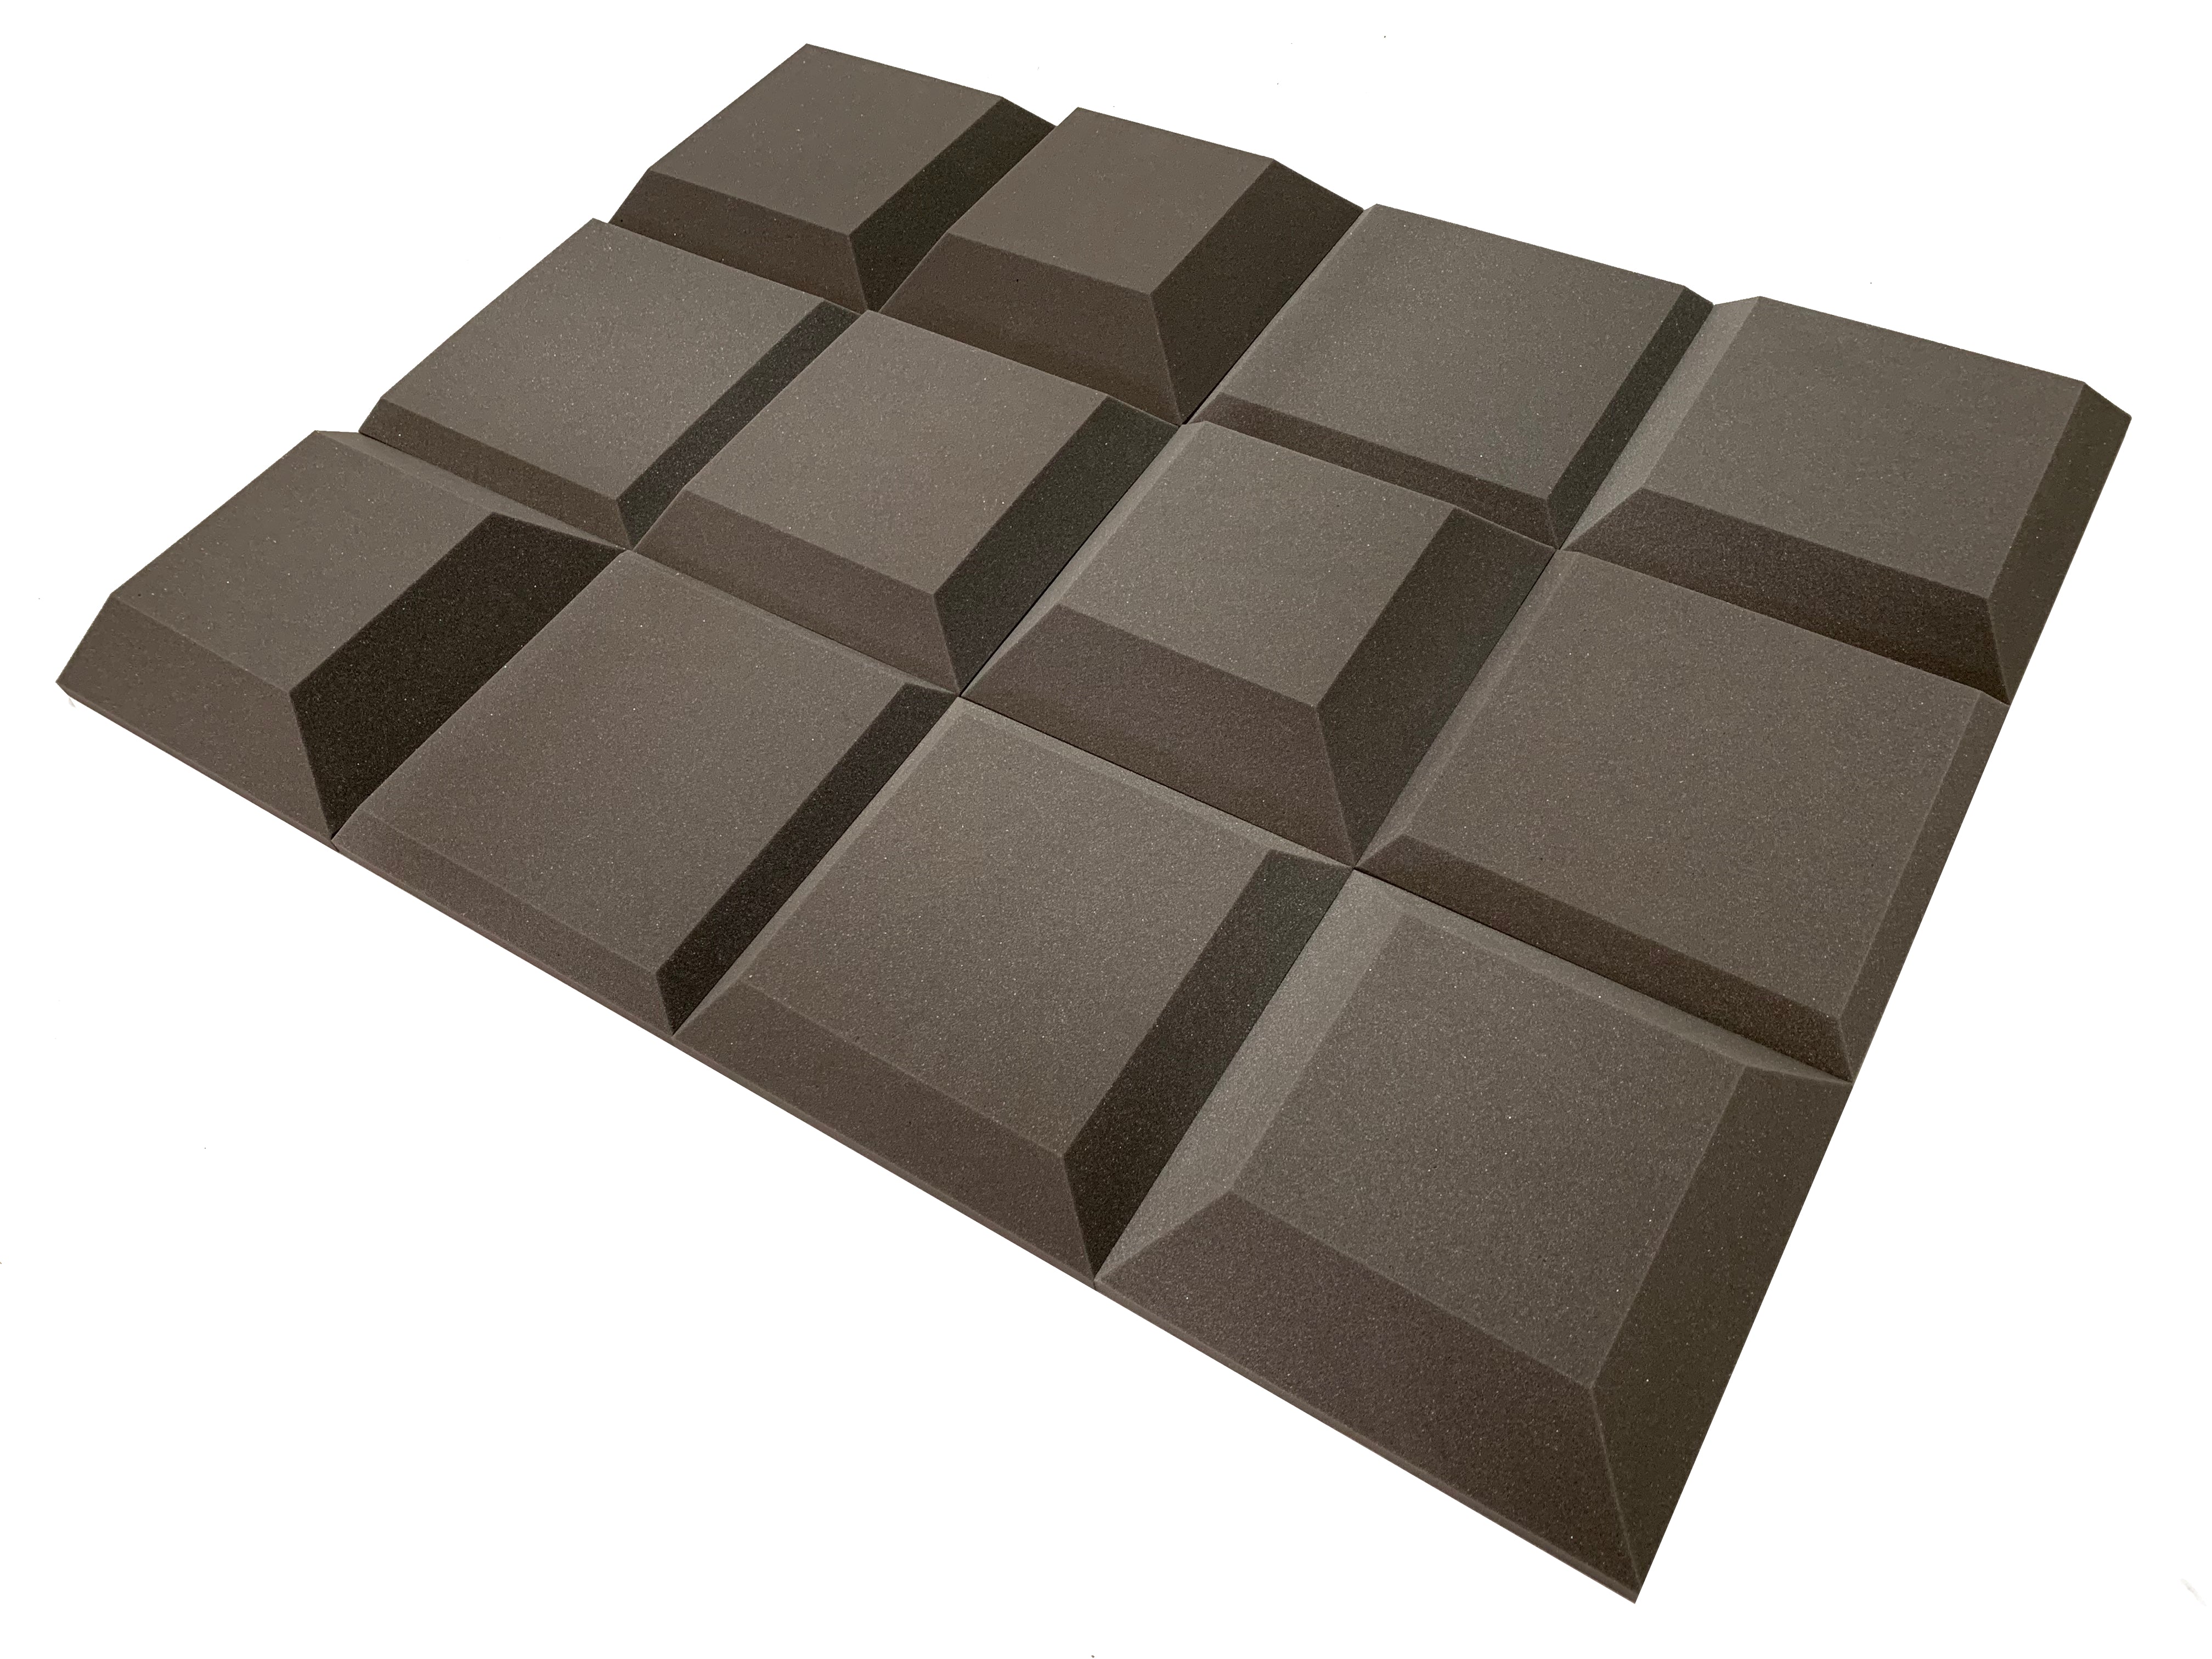 Tegular 2" Acoustic Studio Foam Tile Pack - 24 dalles, couverture de 3,48 m²-19